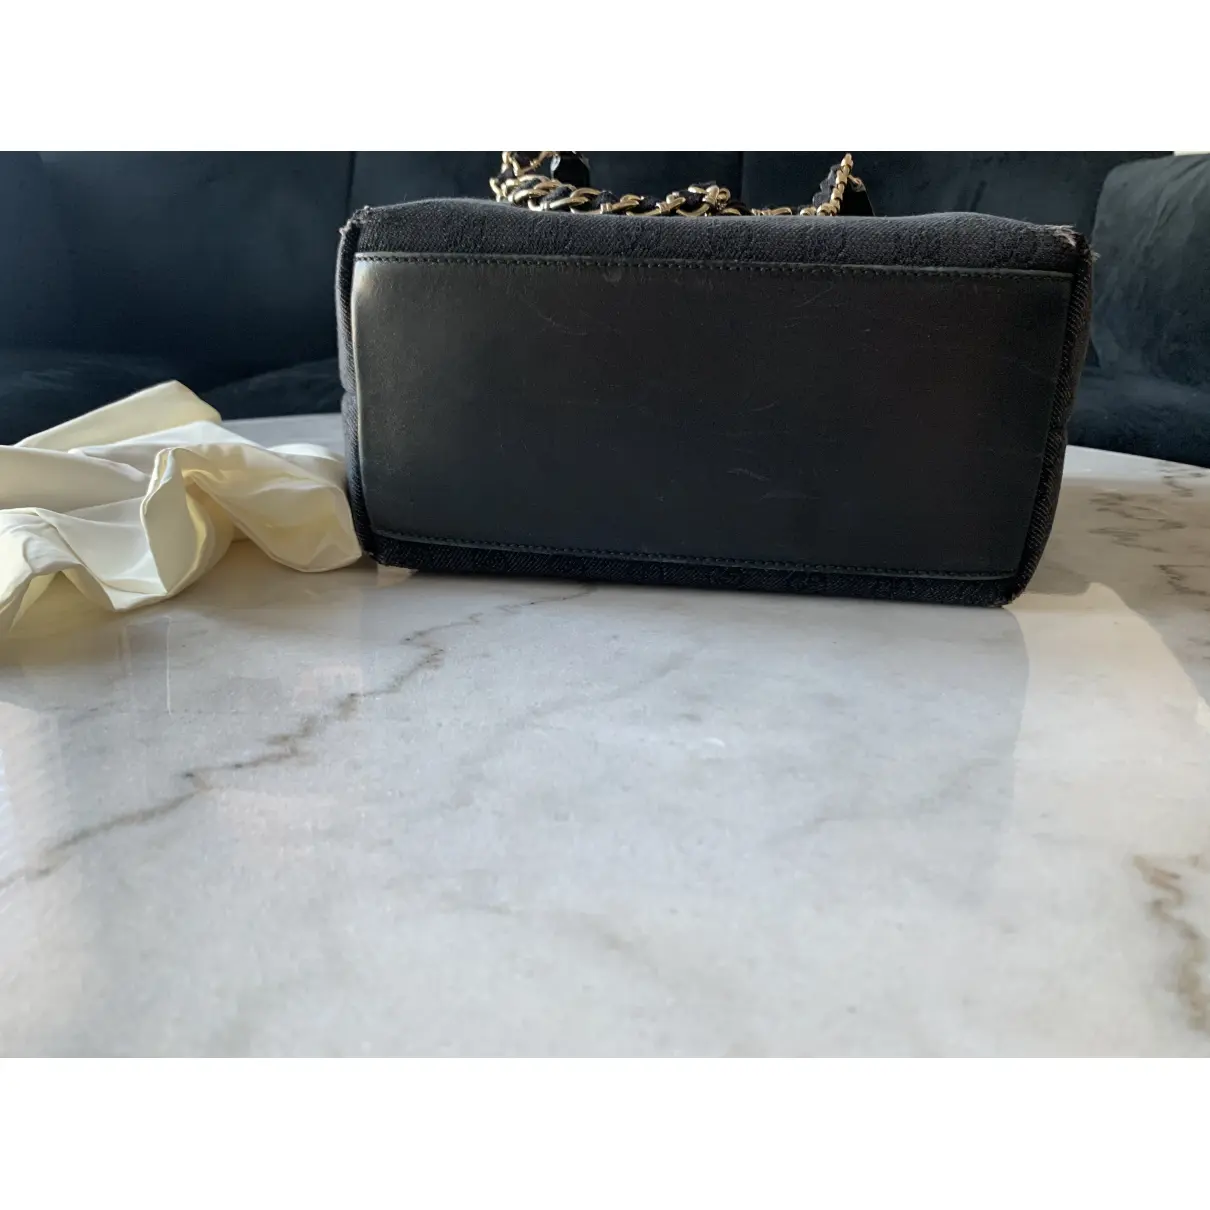 Buy Gucci Marmont handbag online